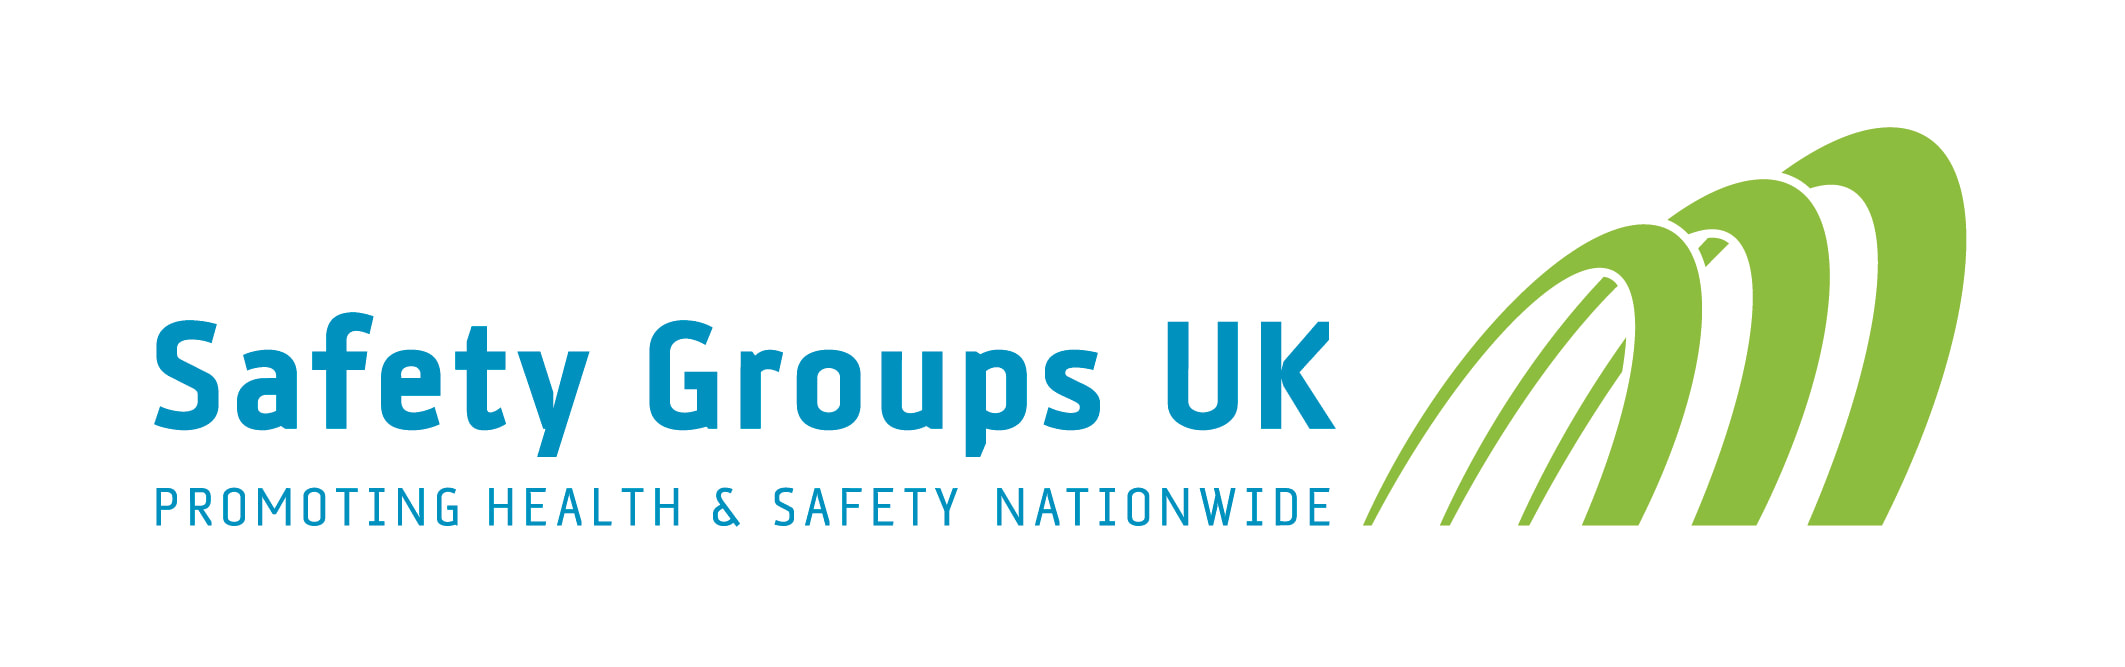 SAFETY GROUPS UK LOGO